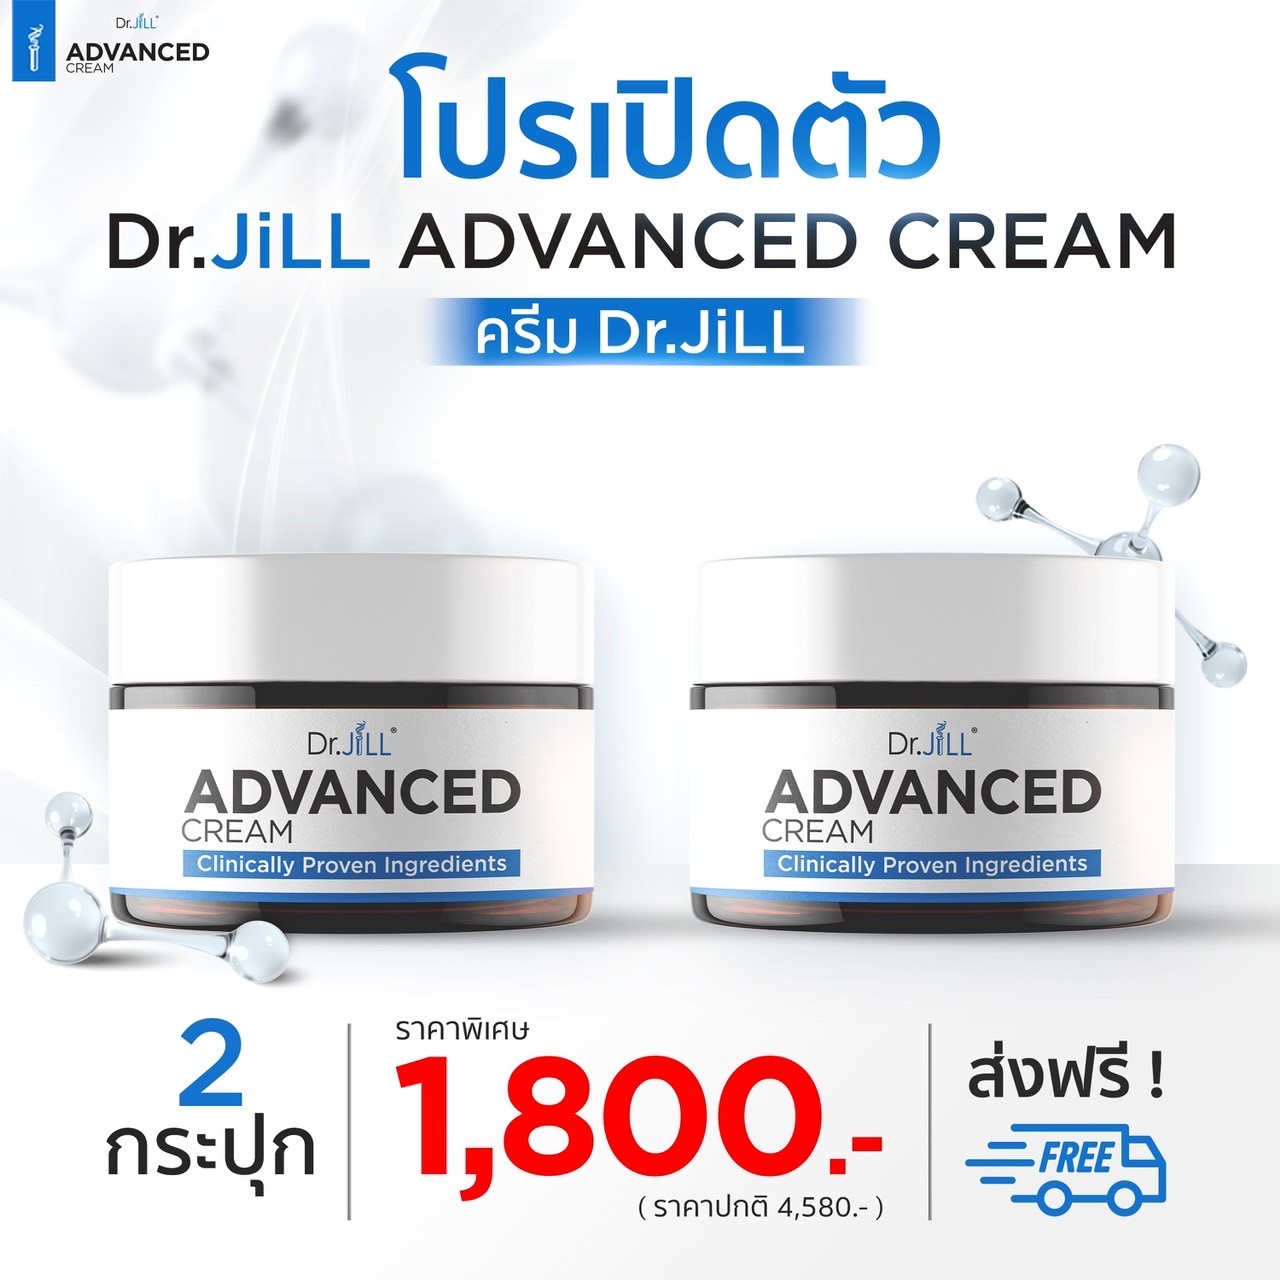 ต้องการสั่งซื้อสินค้า Dr.Jill Advanced Cream จำนวน 2 กระปุก ส่งฟรี